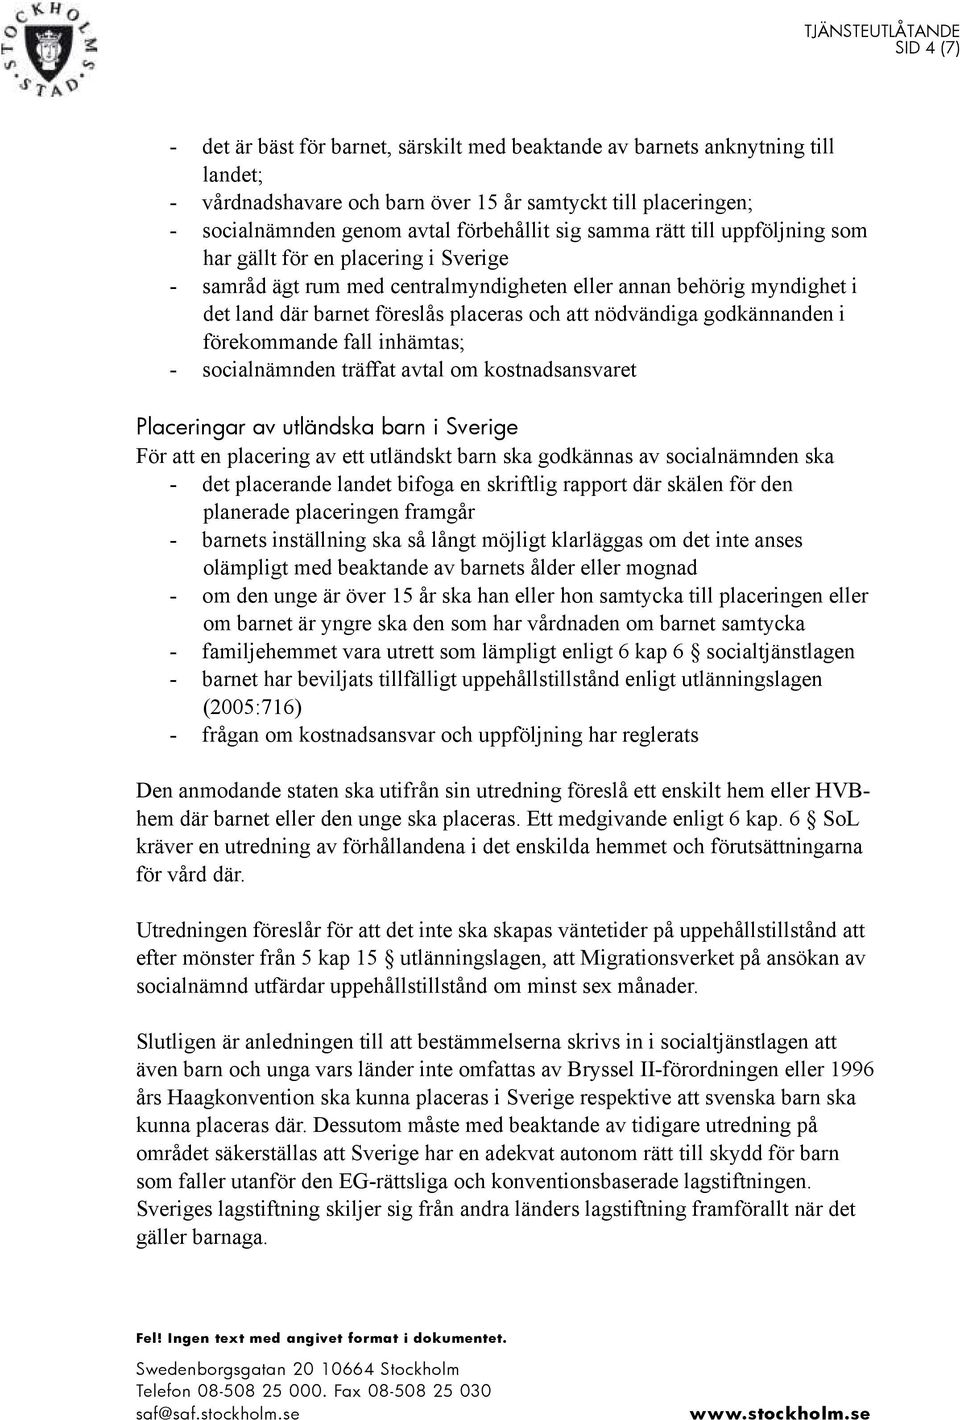 nödvändiga godkännanden i förekommande fall inhämtas; - socialnämnden träffat avtal om kostnadsansvaret Placeringar av utländska barn i Sverige För att en placering av ett utländskt barn ska